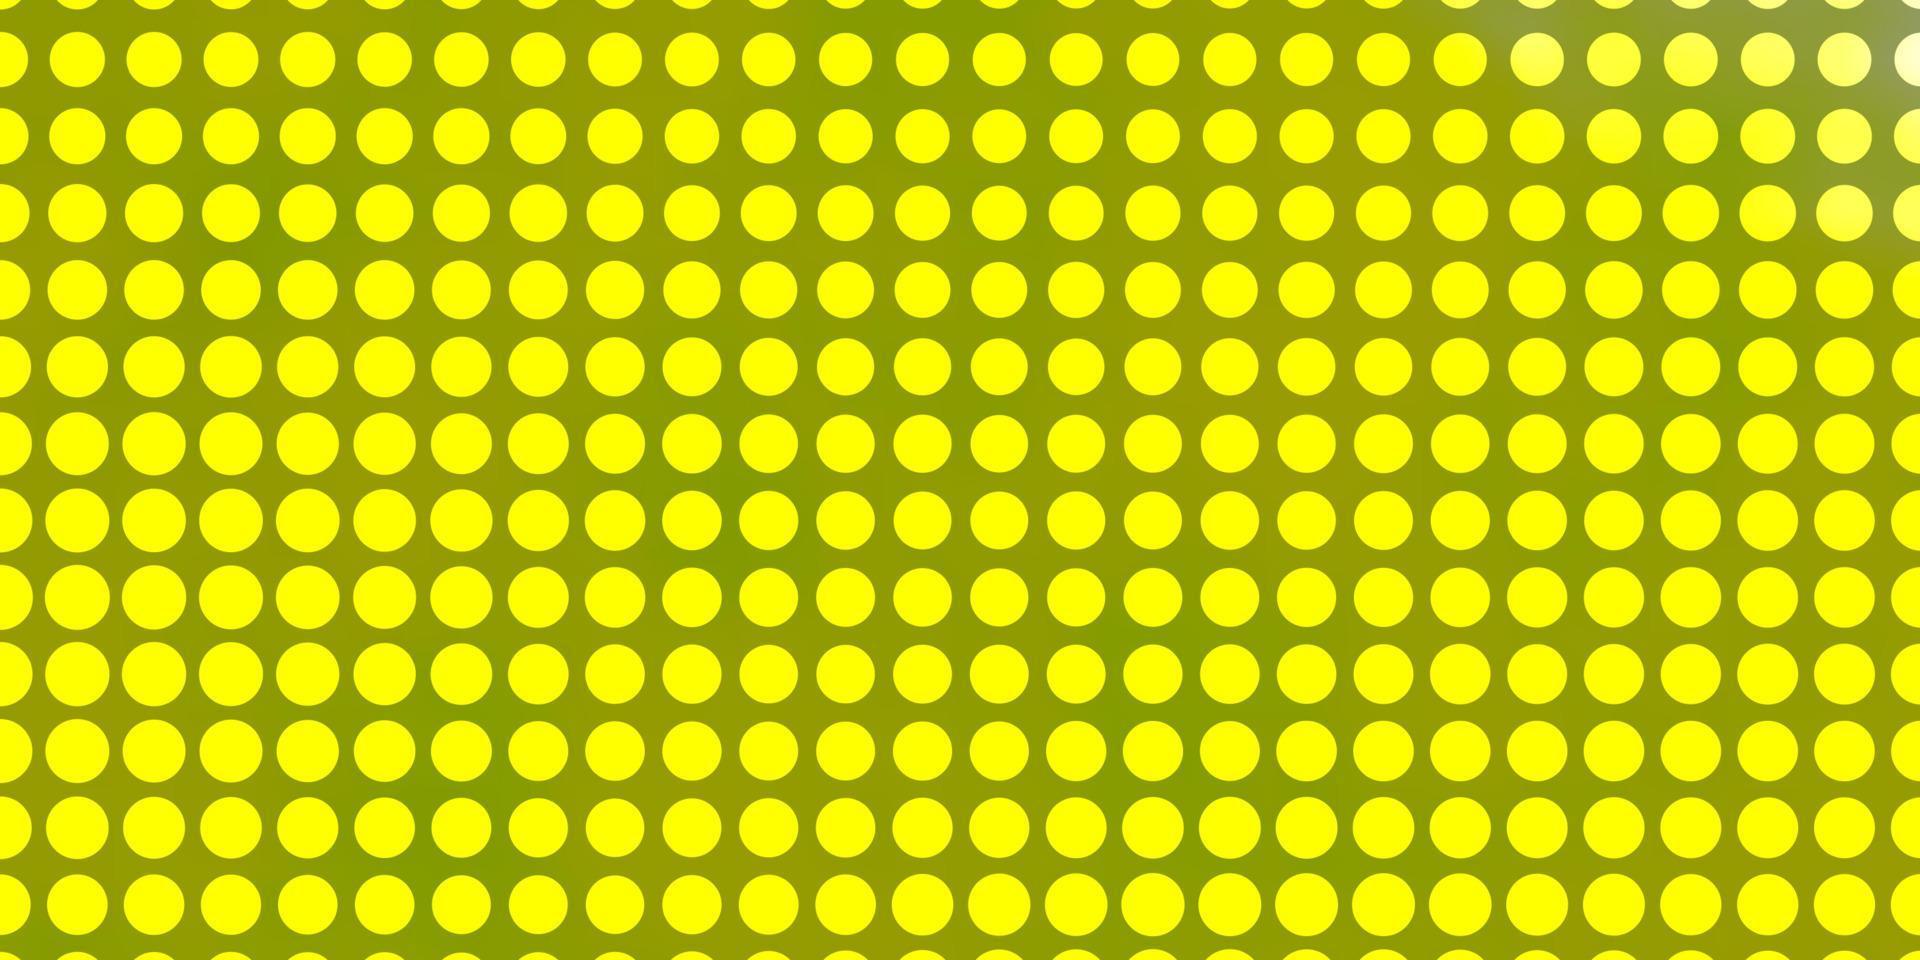 texture de vecteur vert clair, jaune avec des cercles.